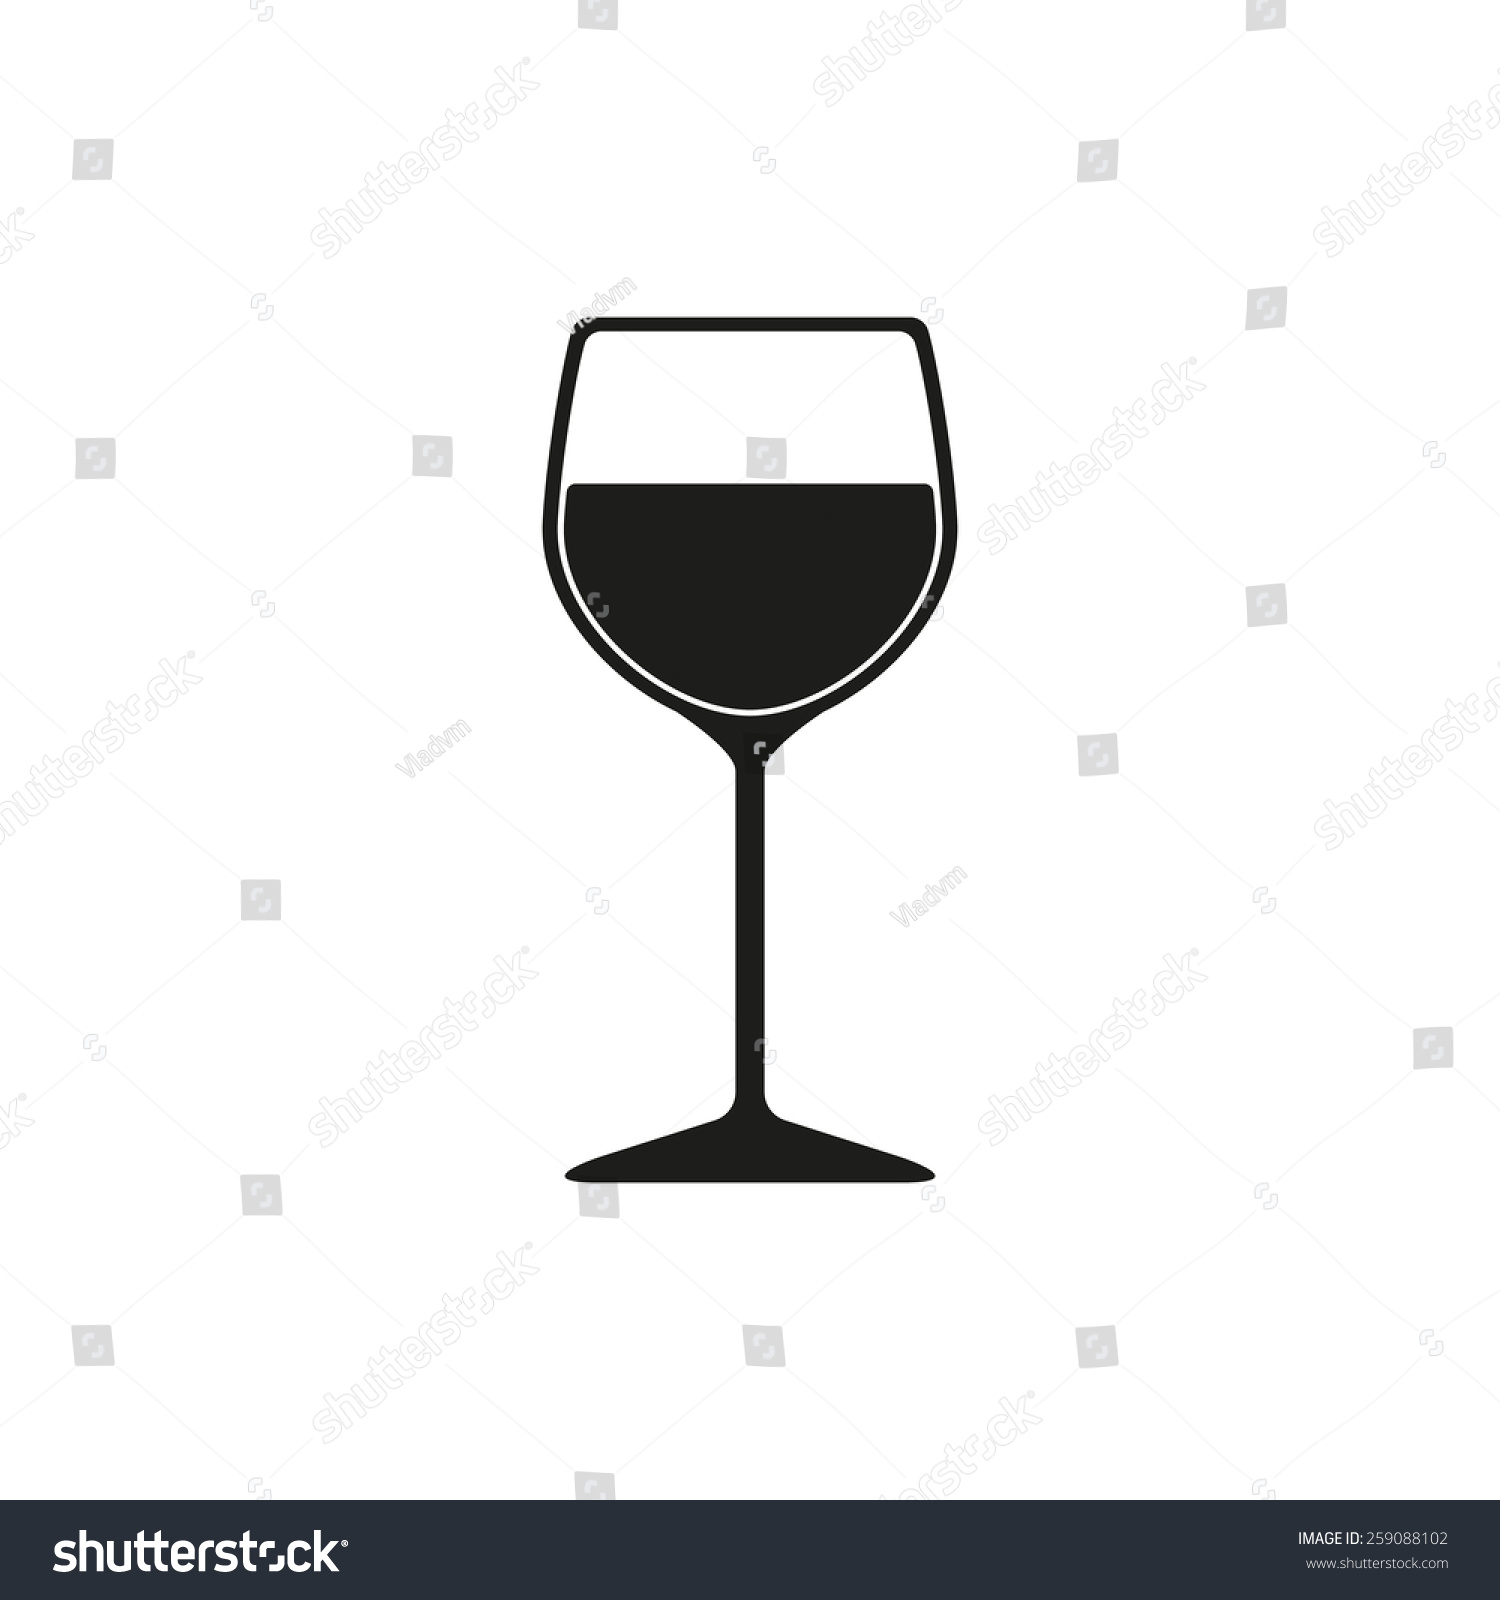 wine glass clip art vector - photo #44